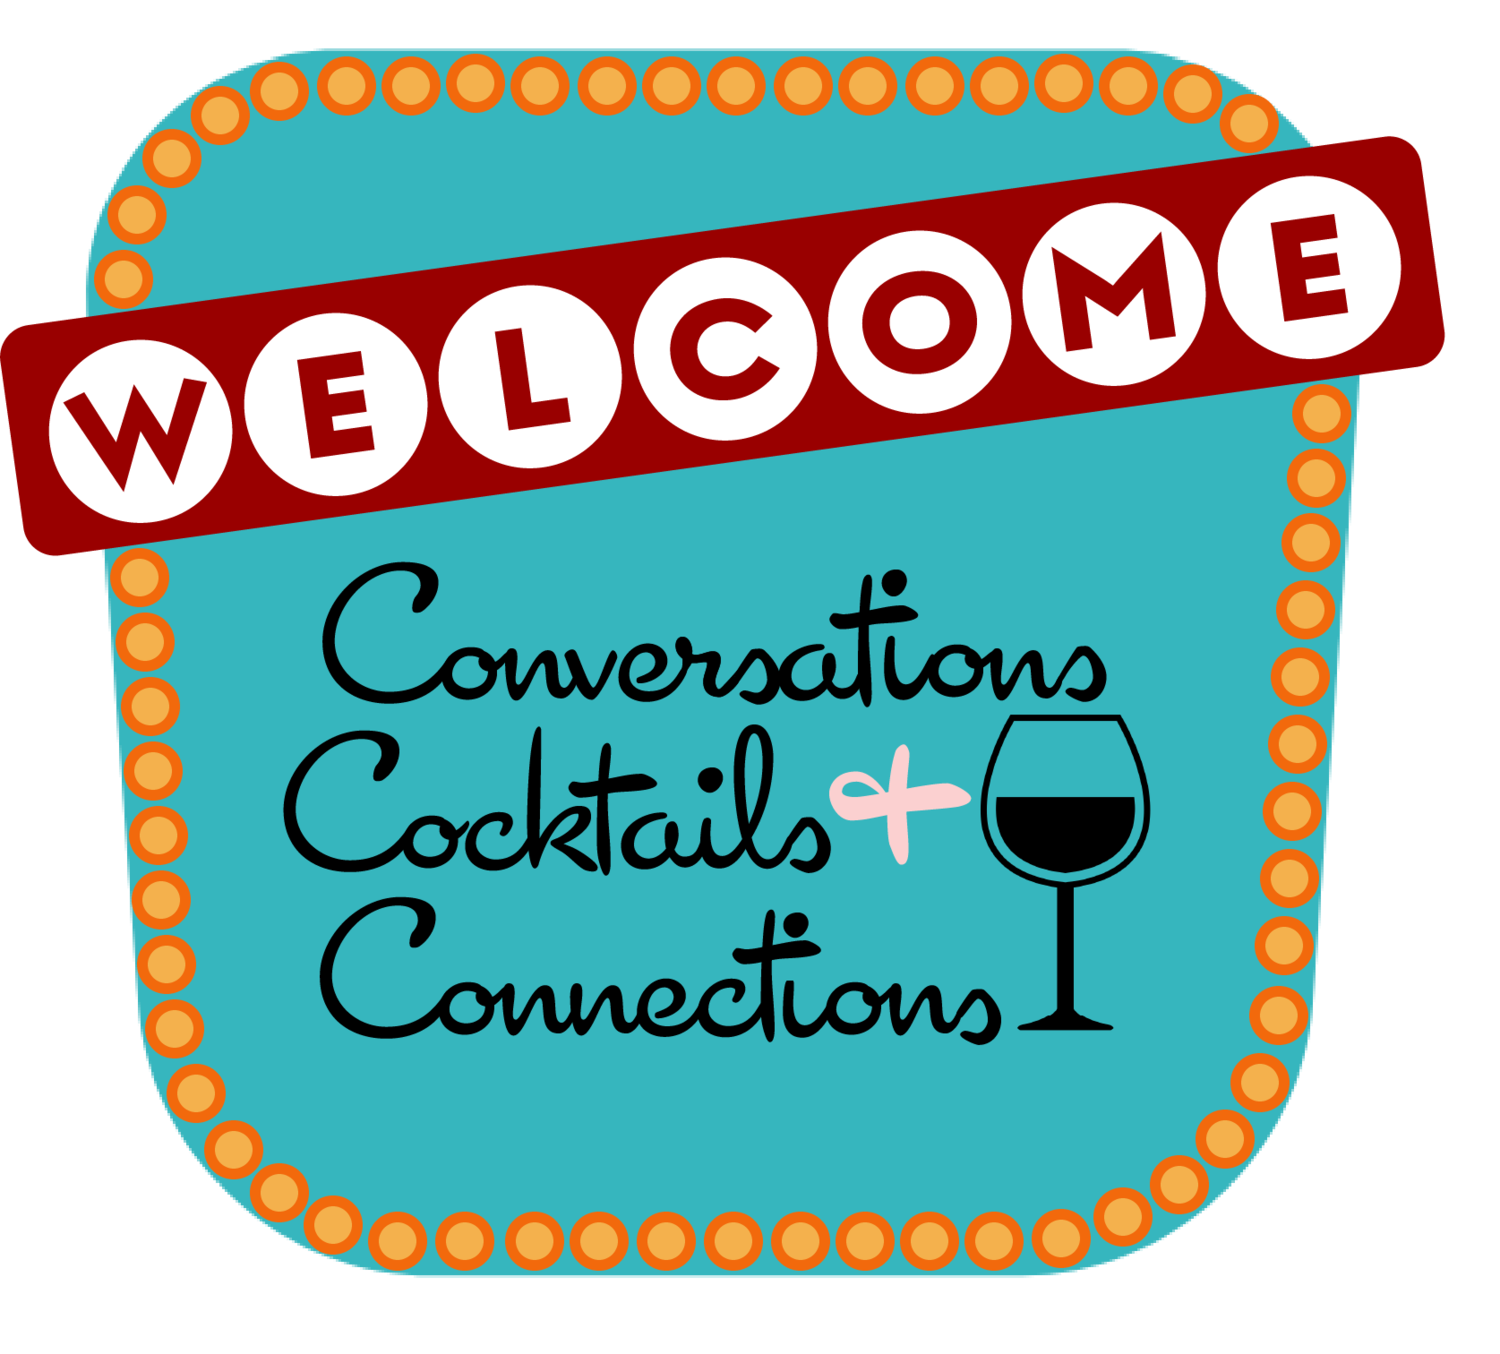 Conversations Cocktails + Connections